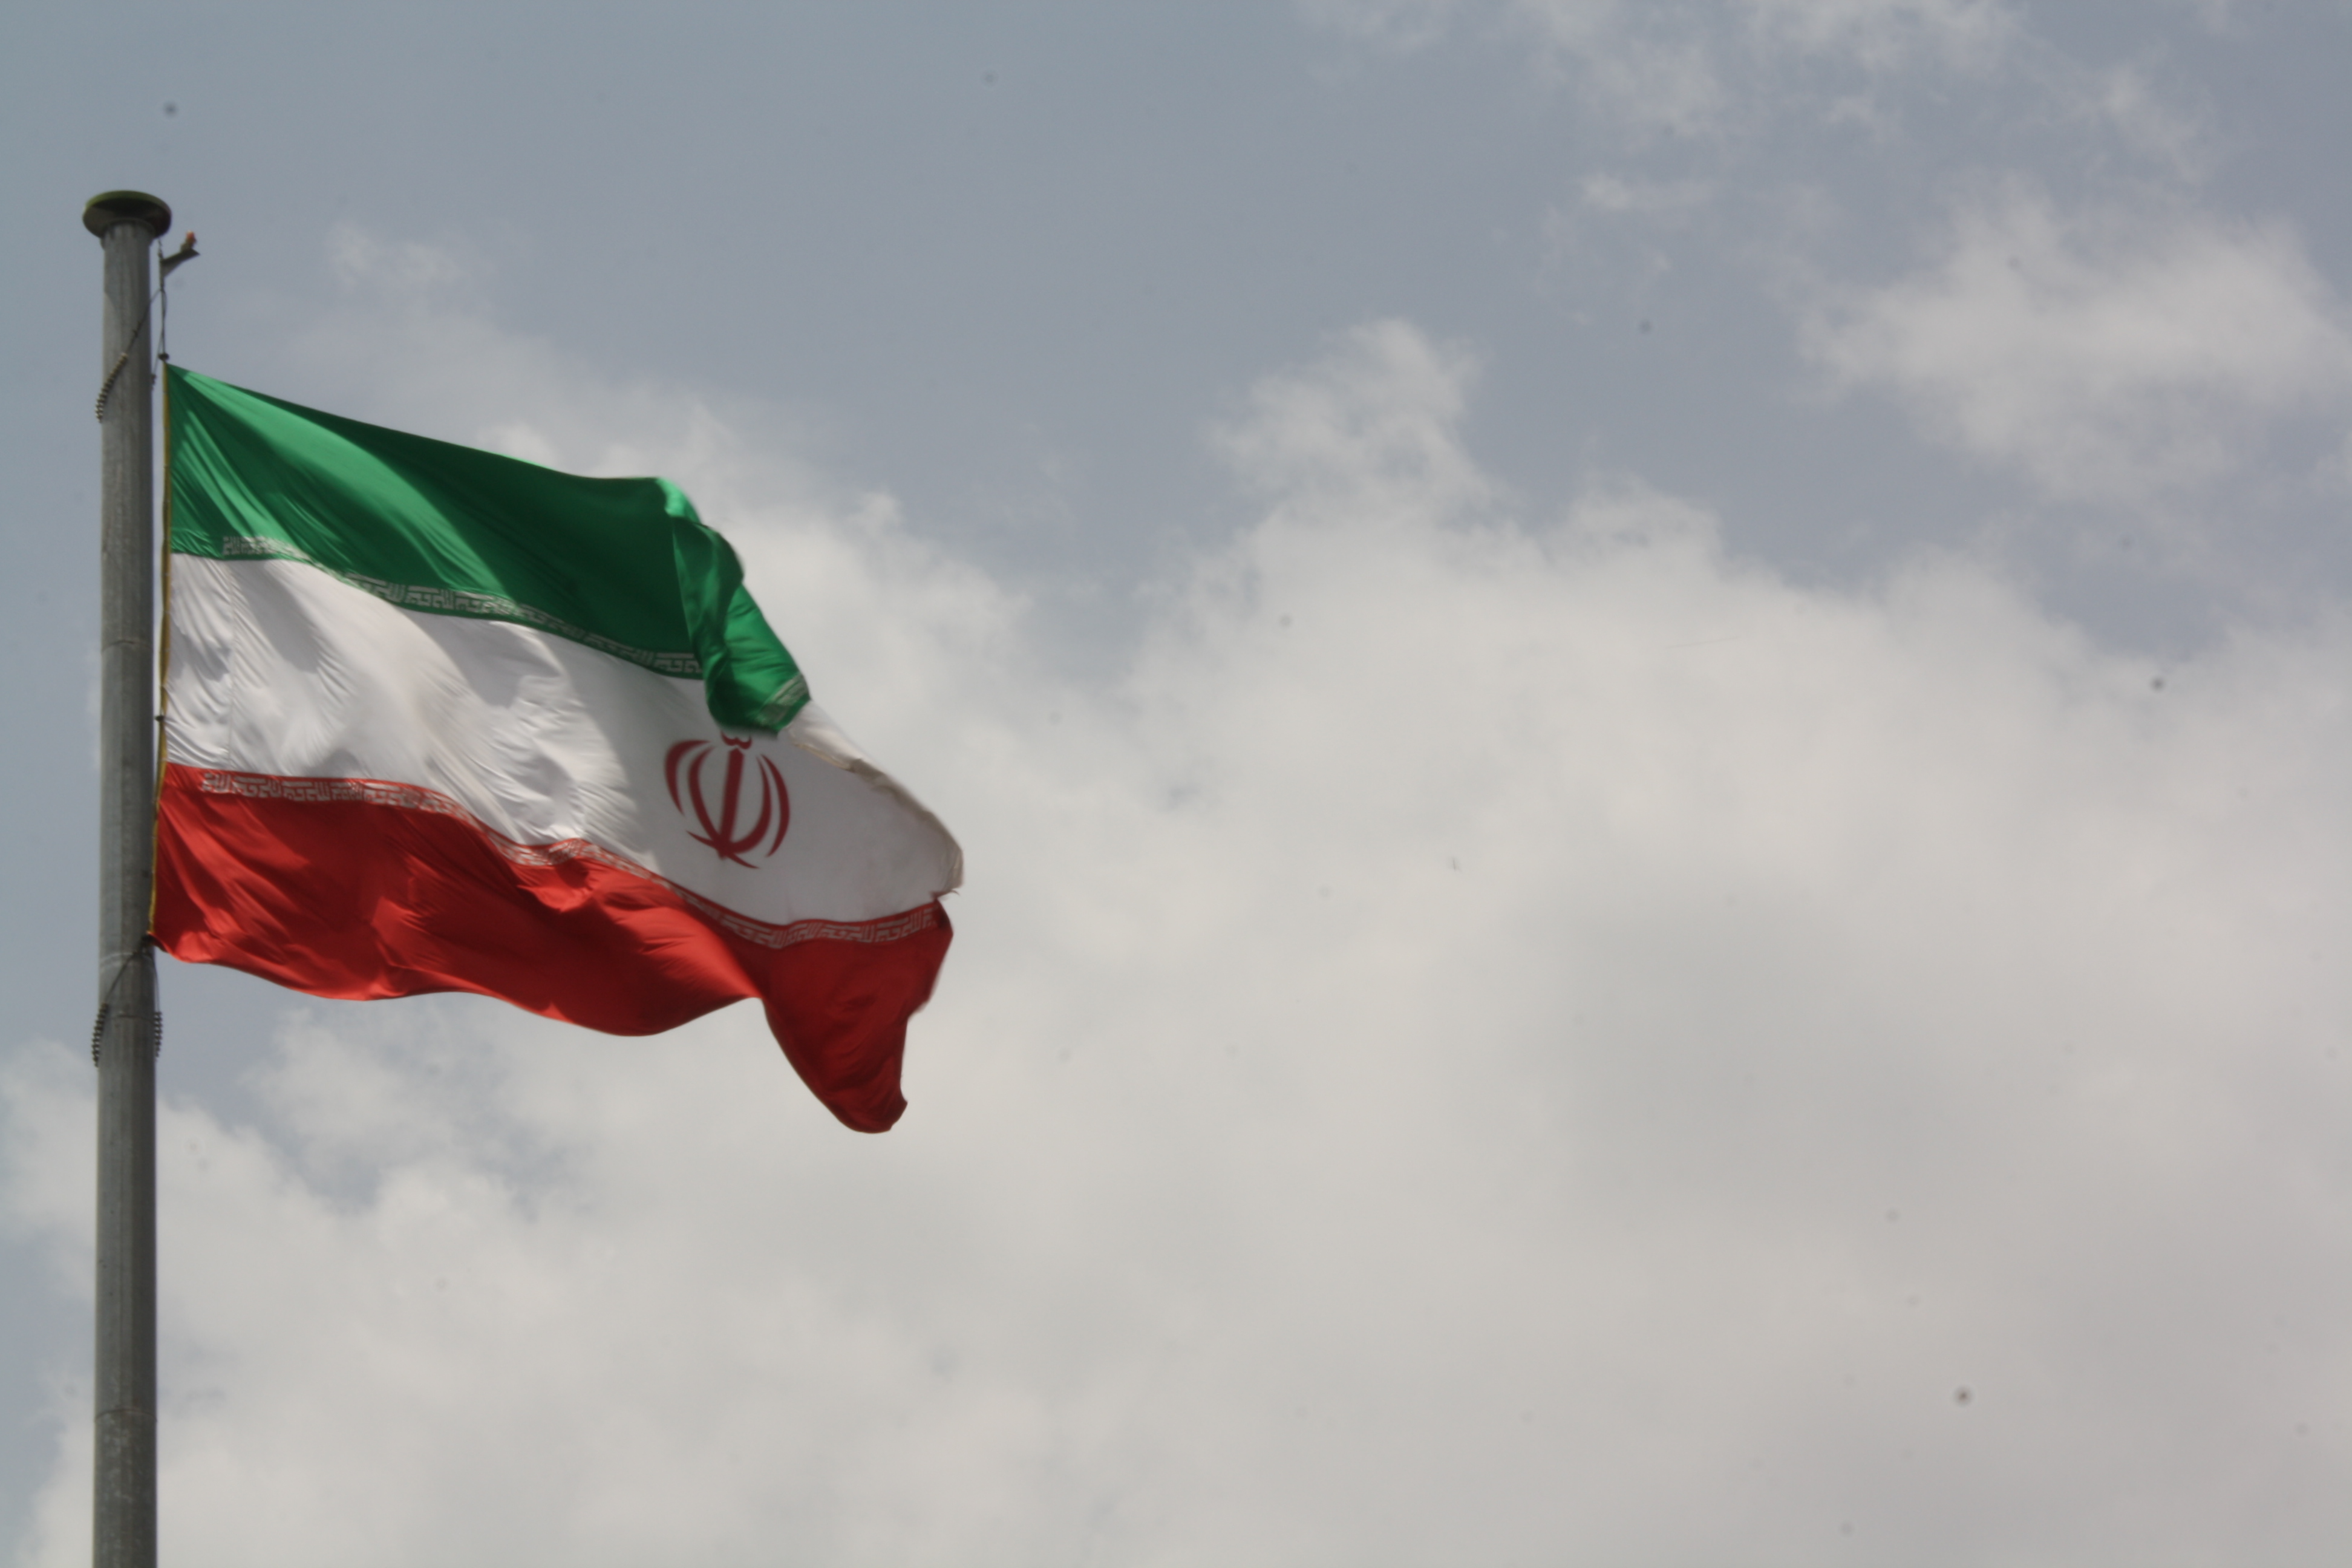 Скачать обои бесплатно Разное, Флаг, Флаг Ирана картинка на рабочий стол ПК